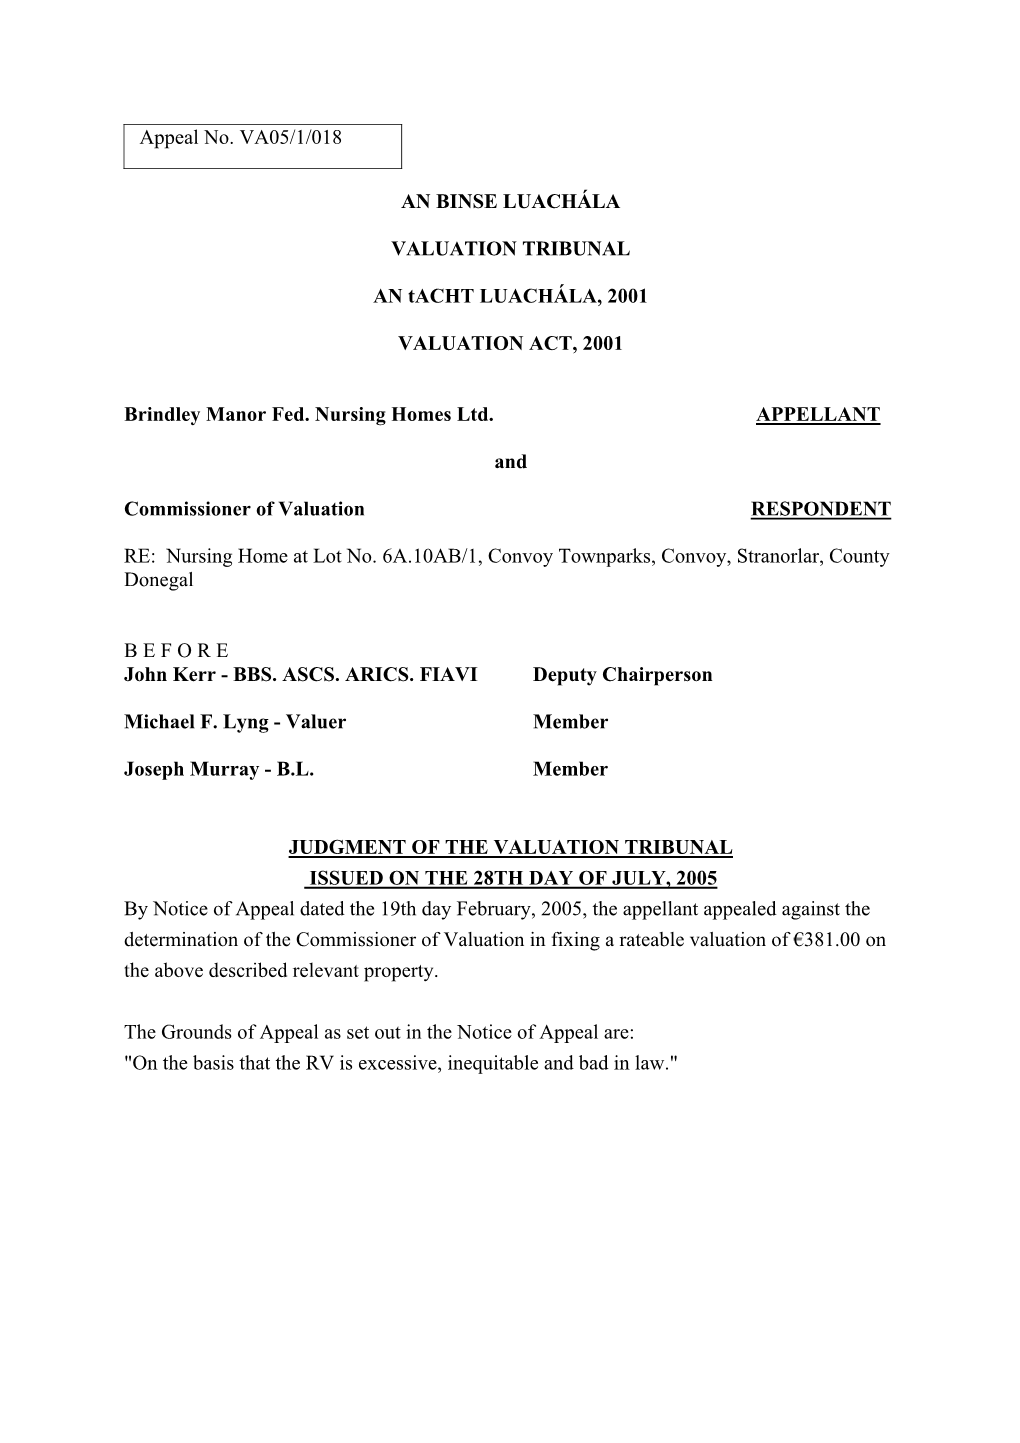 VA05.1.018 – Brindley Manor Fed. Nursing Homes Ltd